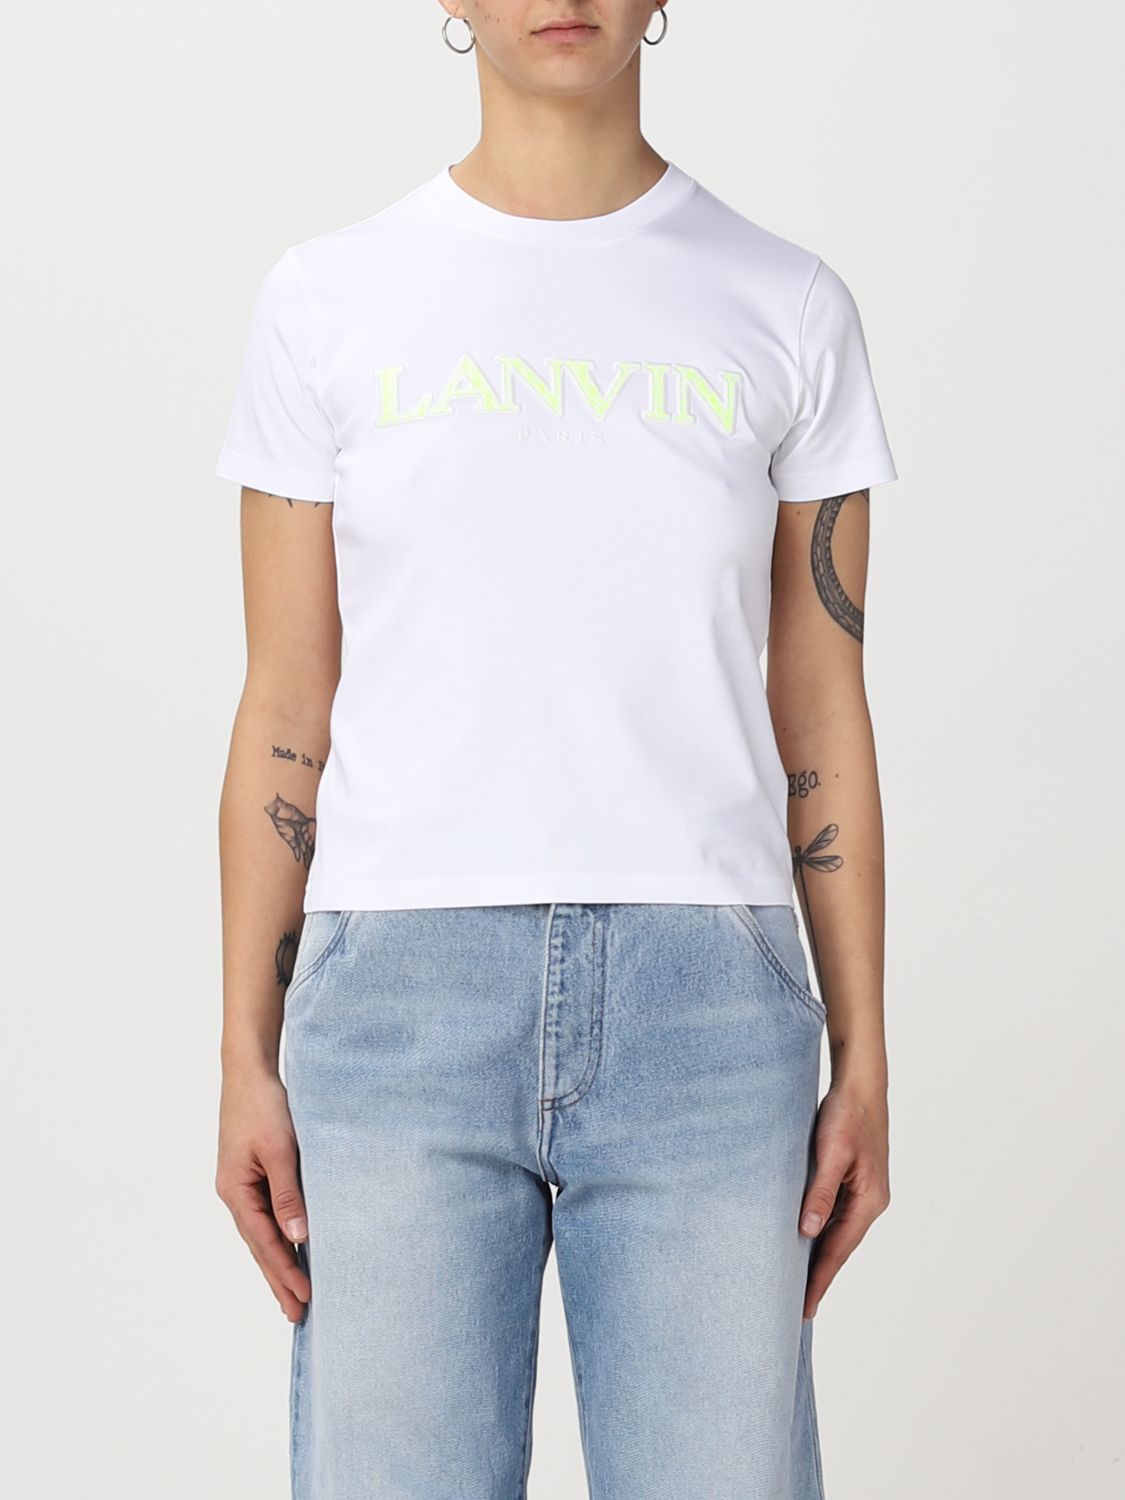 Lanvin T-shirt  Woman In White